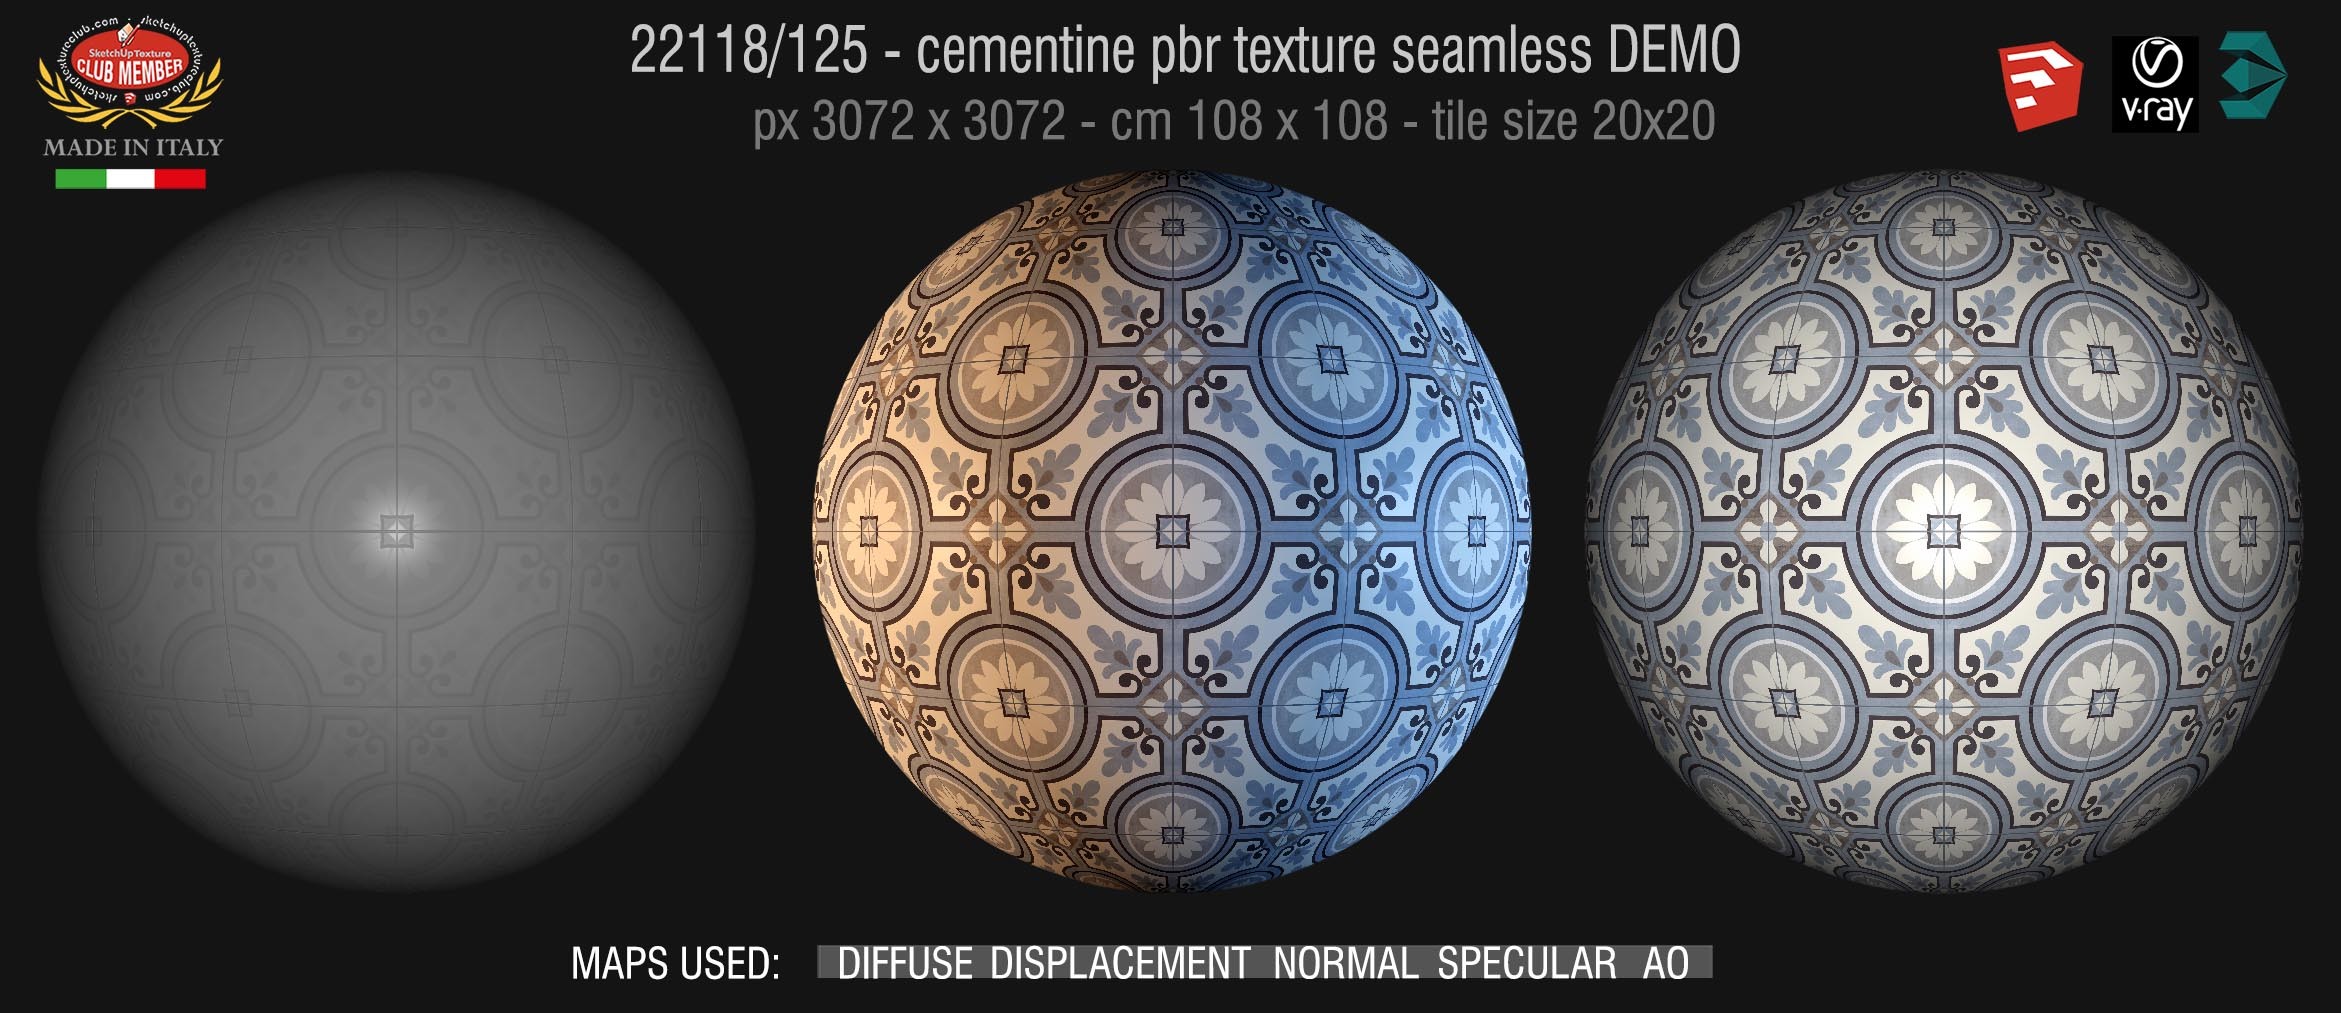 22118/125 ementine tiles Pbr seamless texture DEMO - porcelain stoneware concrete look PARIS collection